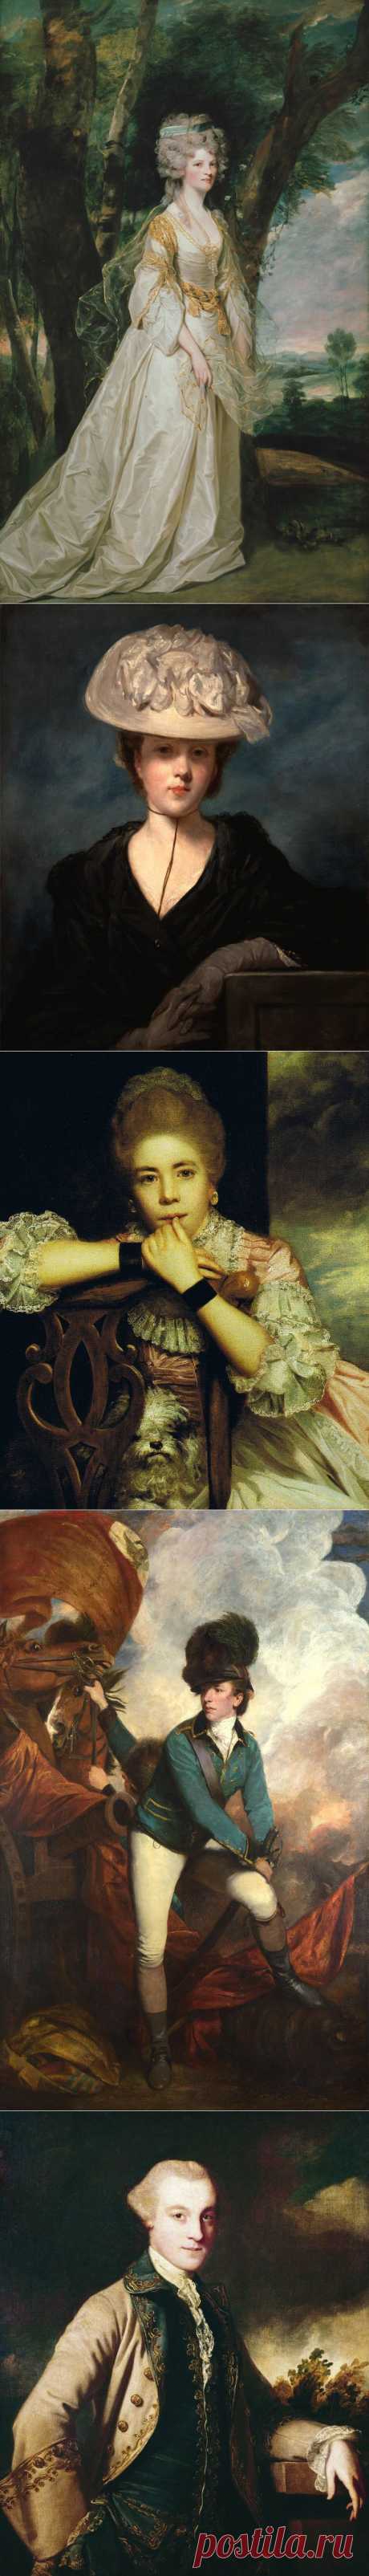 Английский портретный живописец
Джошуа Рейнольдс (1723-1792)